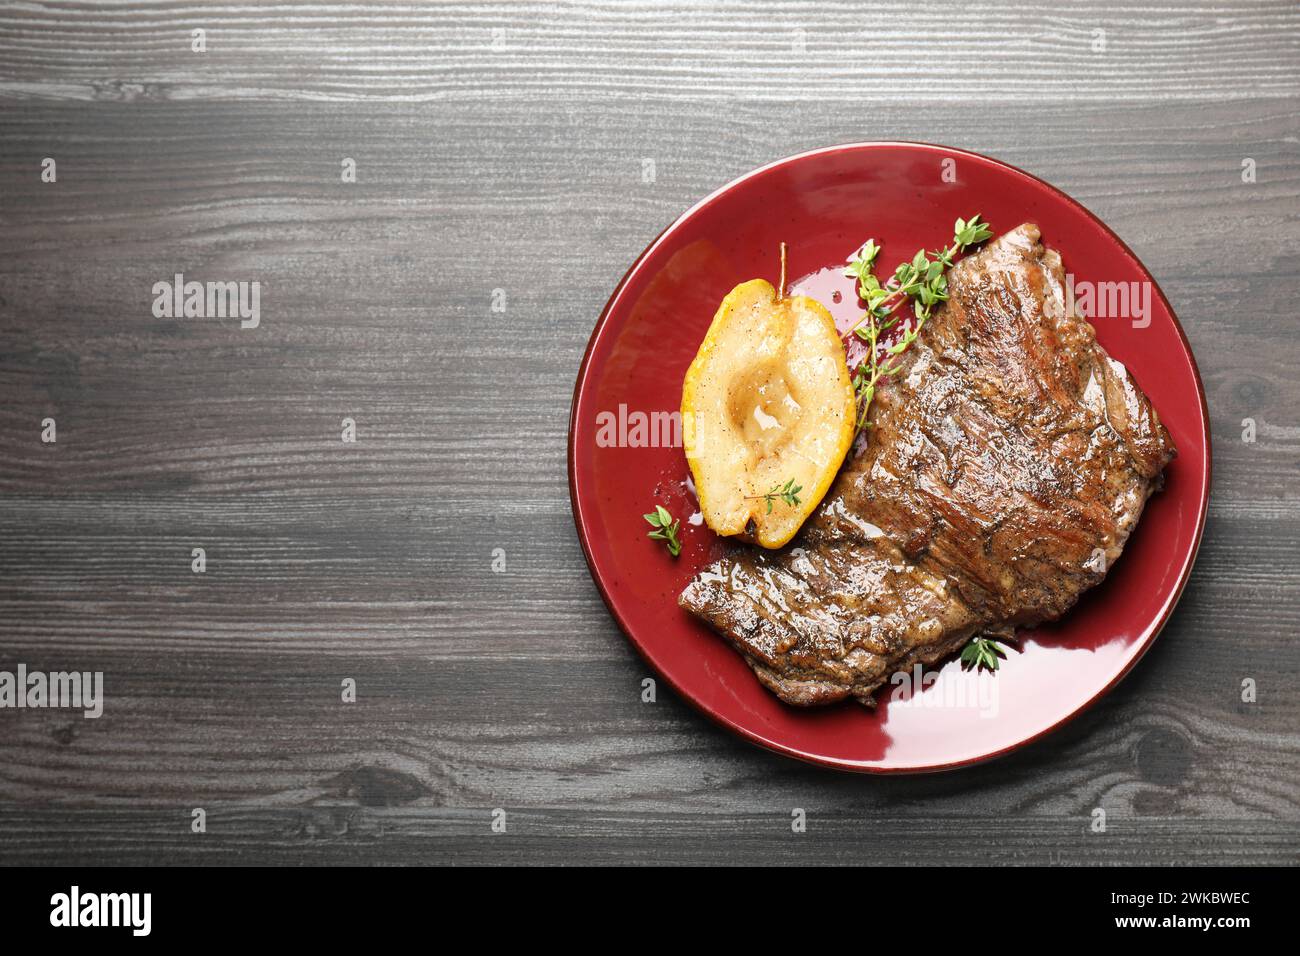 Délicieuse viande de bœuf rôtie, poire caramélisée et thym sur table en bois gris, vue de dessus. Espace pour le texte Banque D'Images